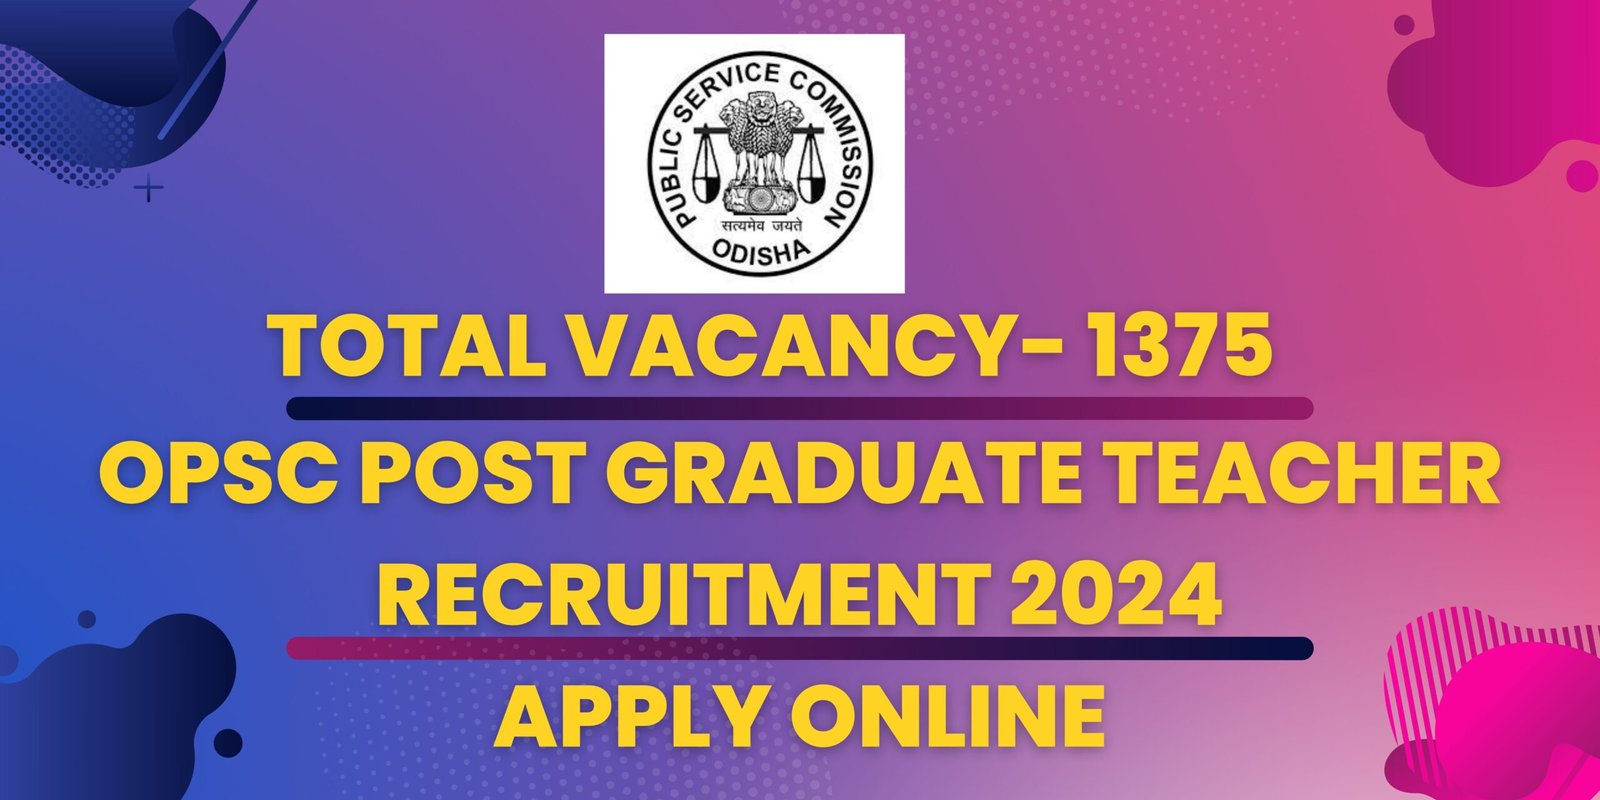 OPSC Post Graduate Teacher Recruitment 2024 Apply Online